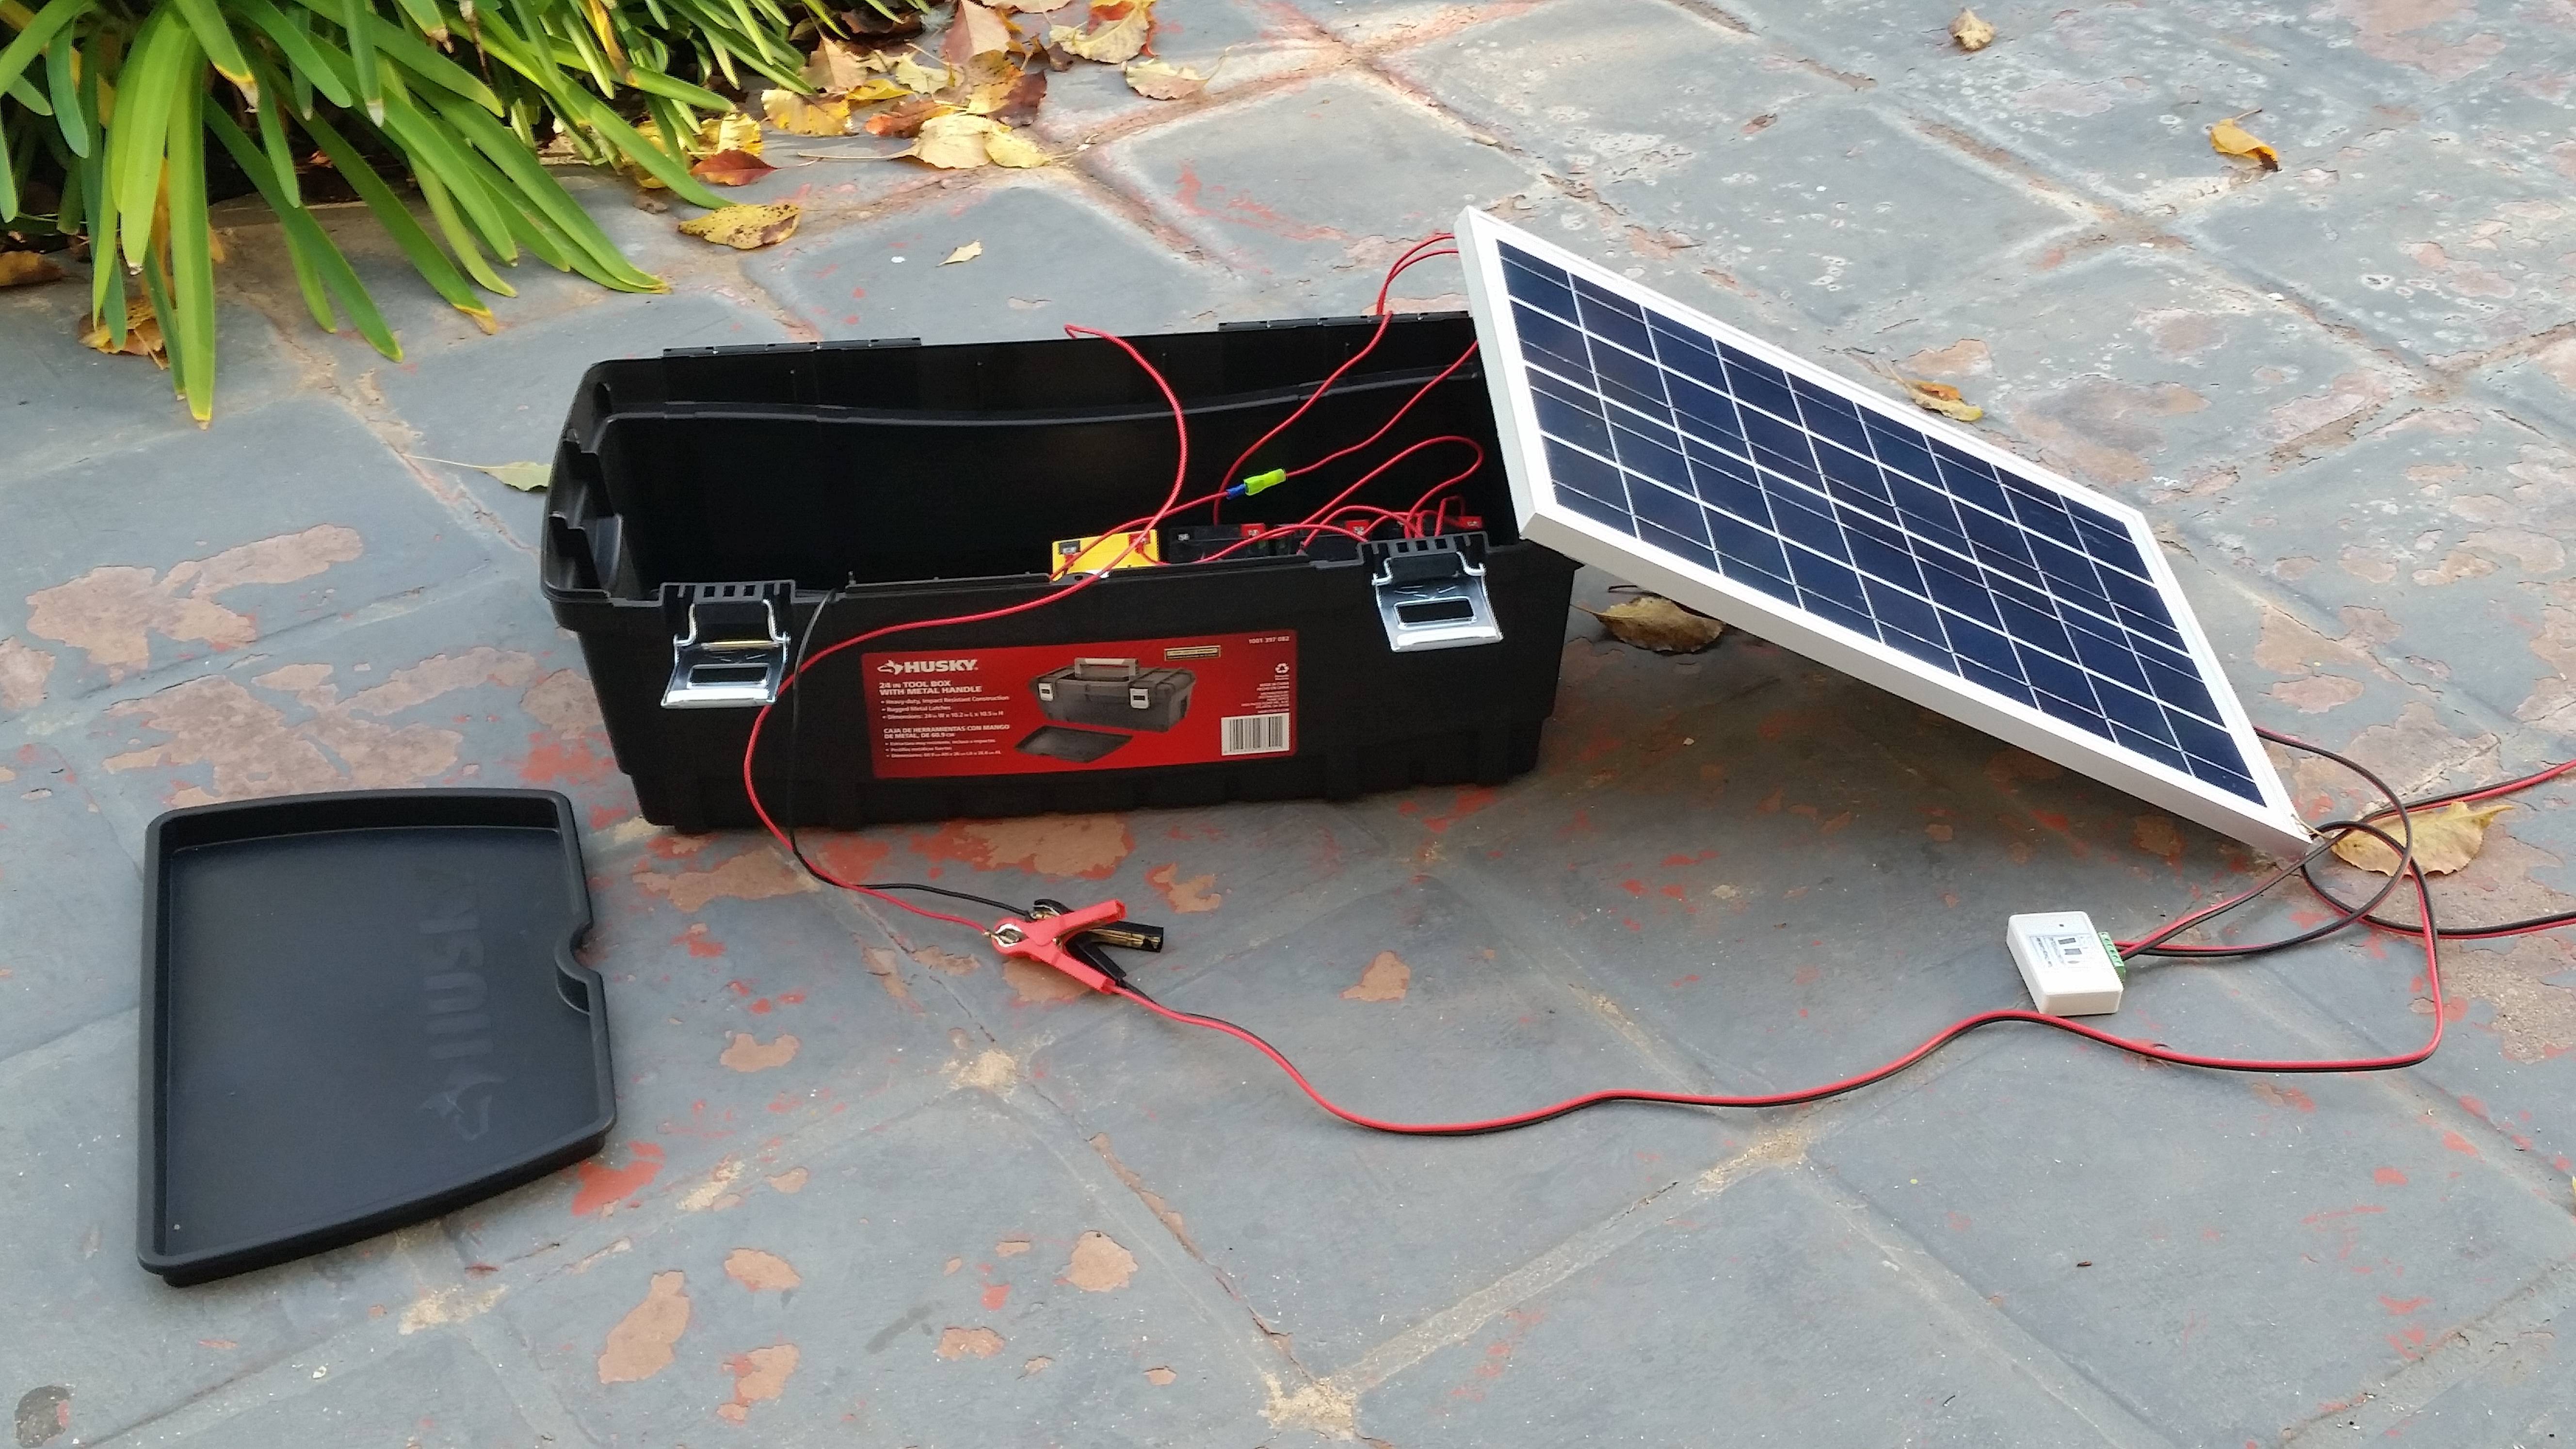 Солнечная батарея своими руками: материалы, устройство и принцип работы